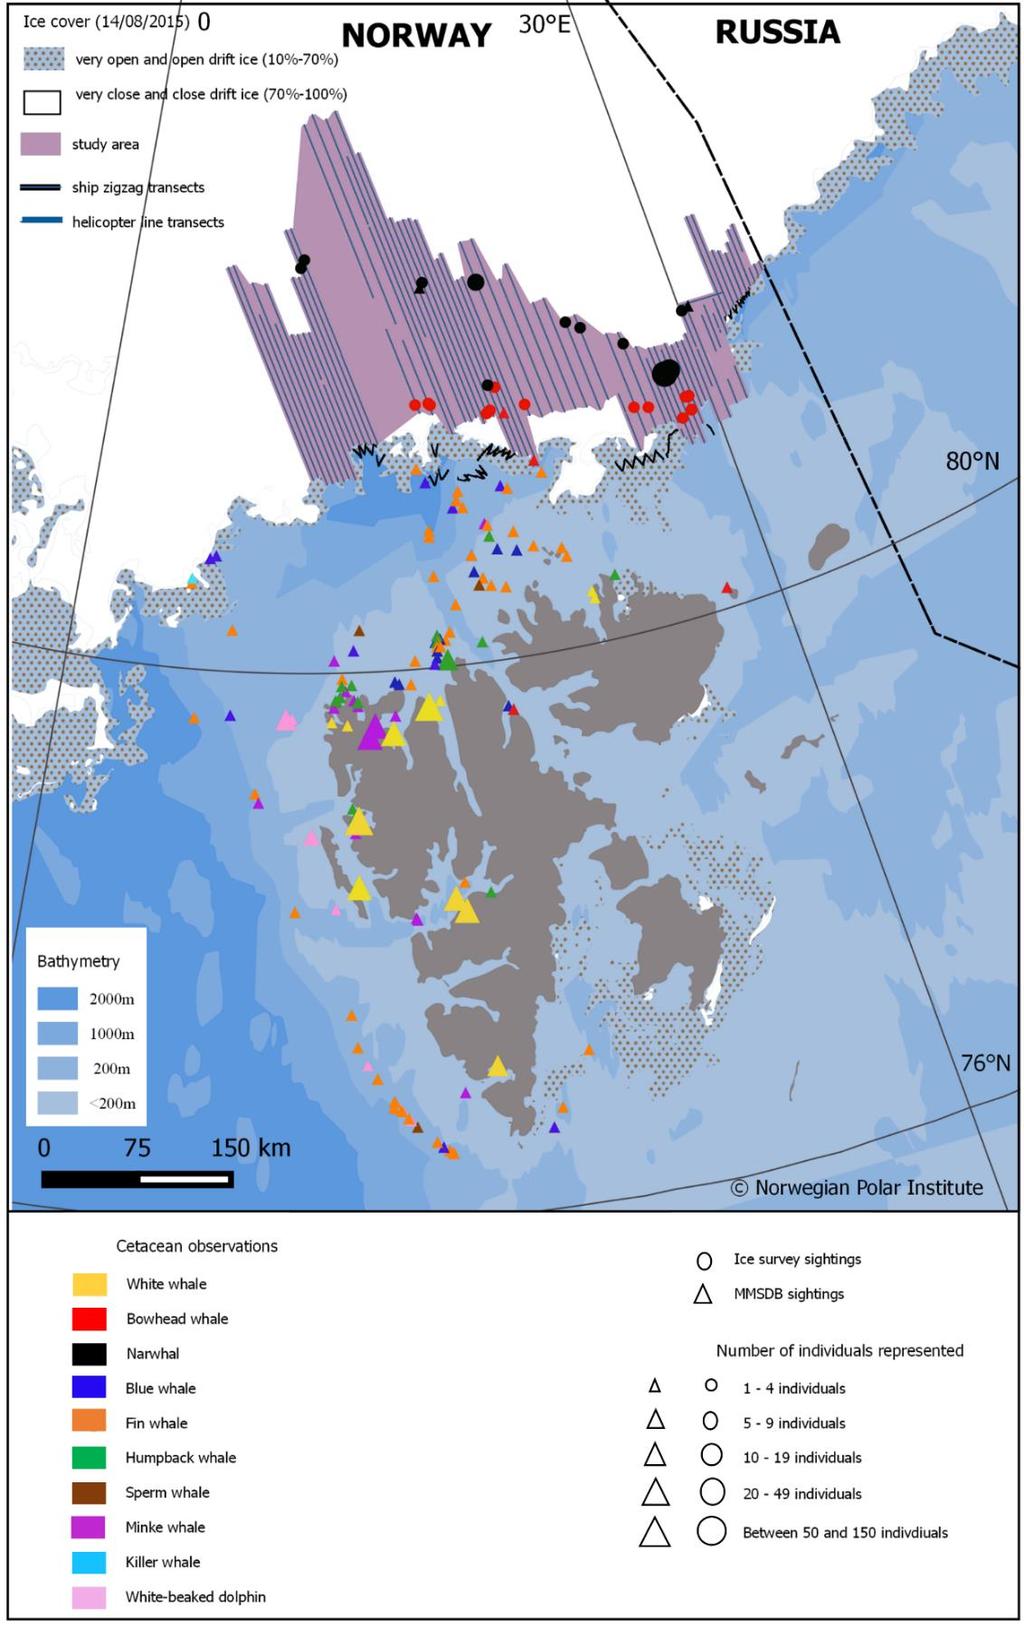 Figur 2. Øvre del av figuren viser grønlandshval og narhval observert i iskantsonen under en telling i august 2015 (Kilde: Vacquié -Garcia et al. 2017).